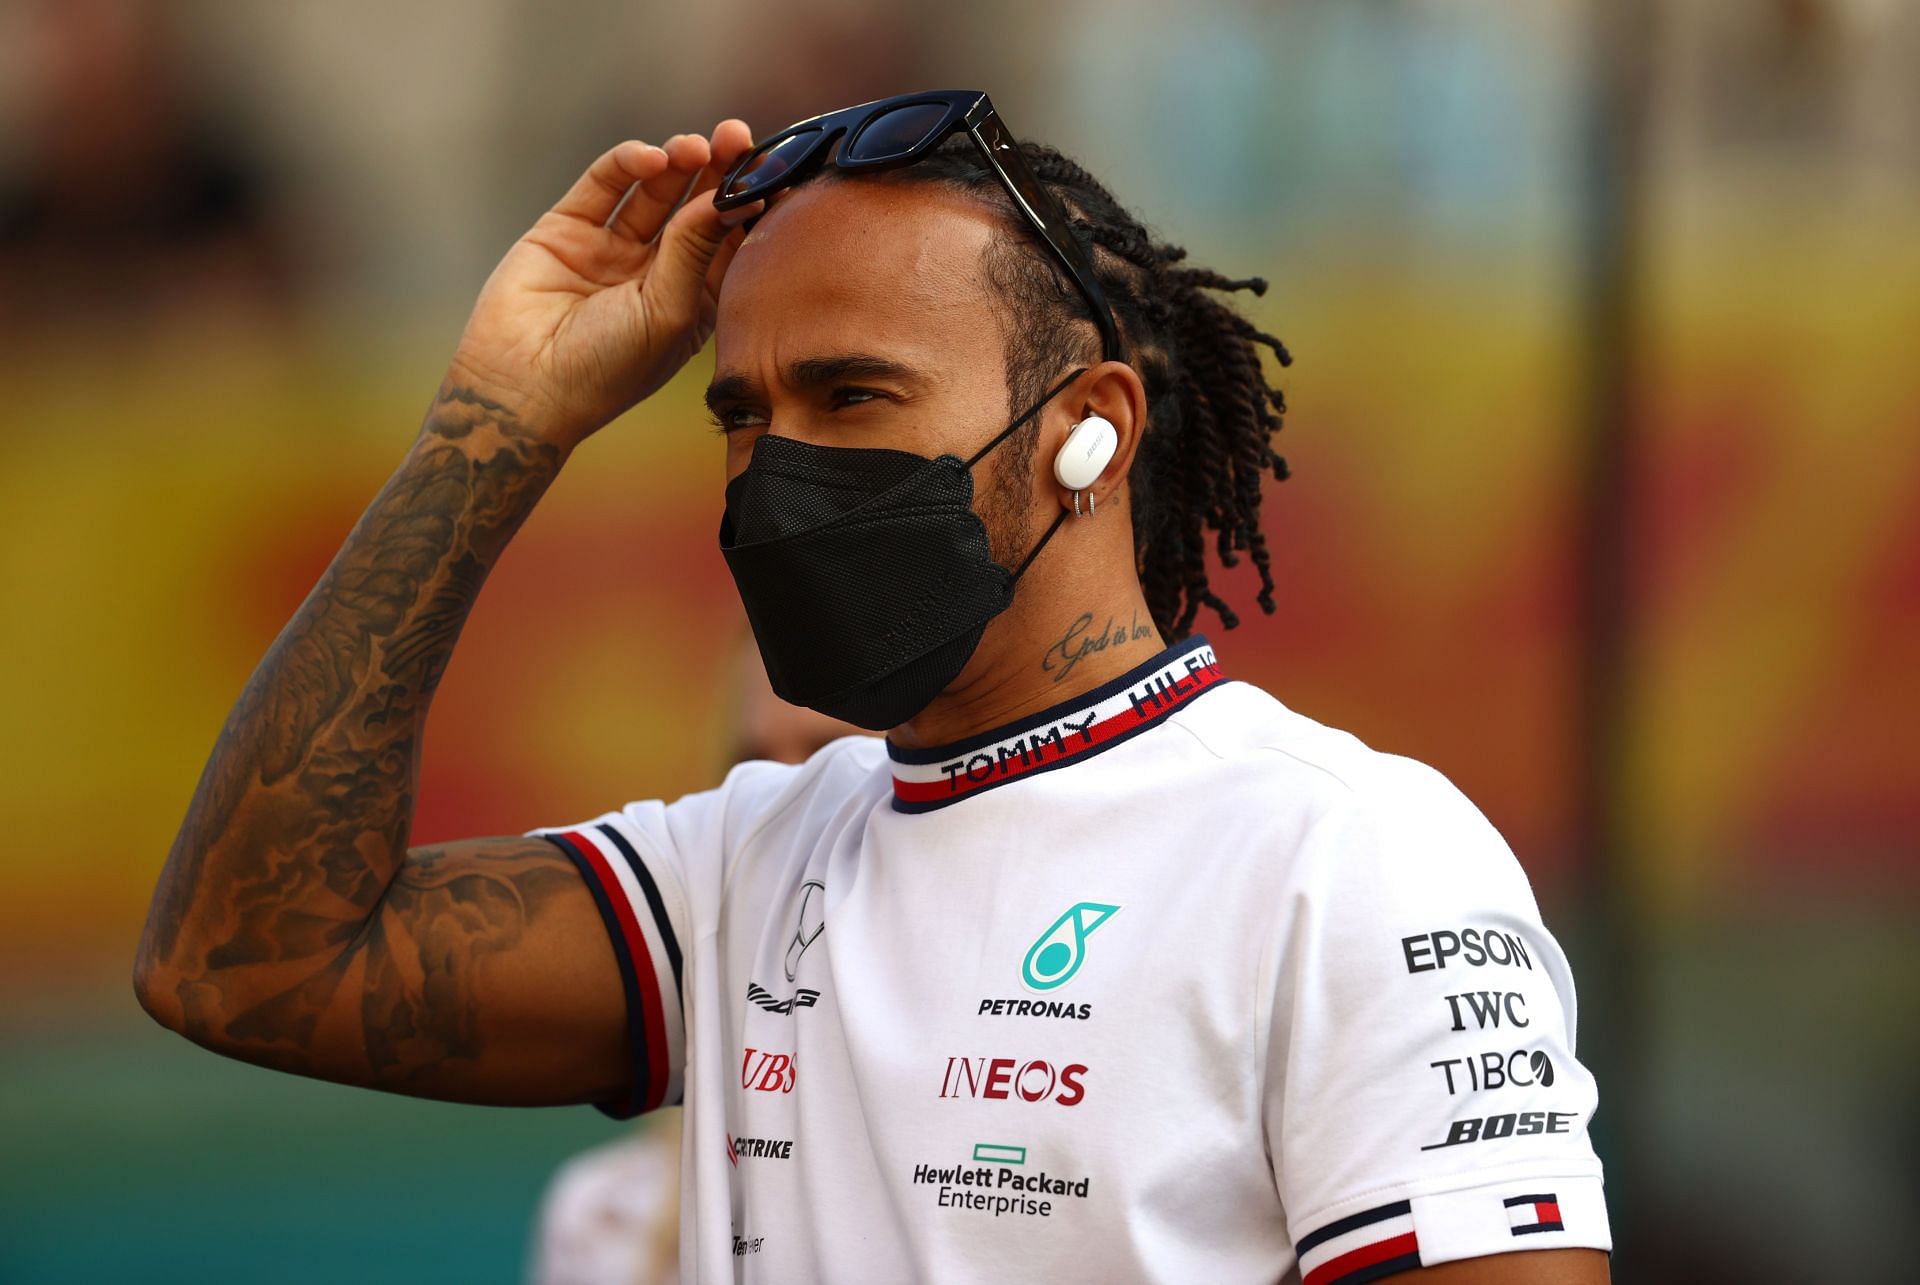 F1 Grand Prix of Abu Dhabi - Lewis Hamilton in the paddock